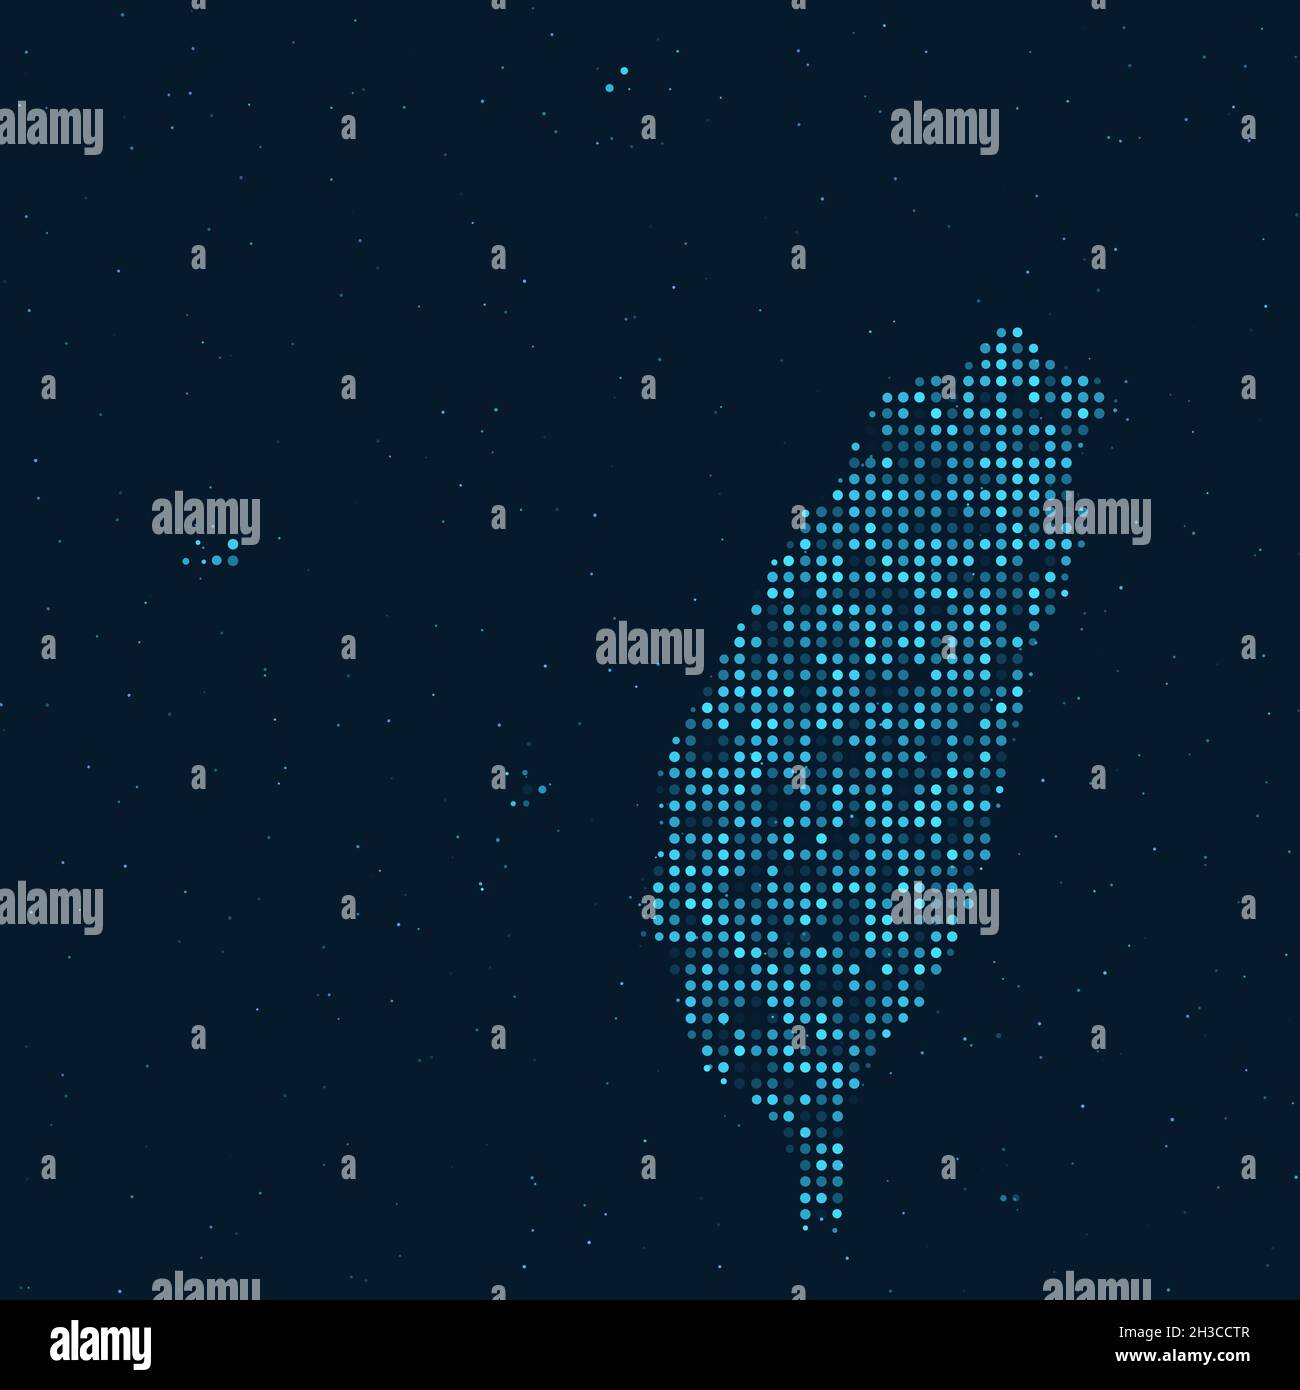 Abstrakter gepunkteter Halbton mit Sterneneffekt auf dunkelblauem Hintergrund mit Karte von Taiwan. Digitale gepunktete Technologie Design Kugel und Struktur. vektor Stock Vektor